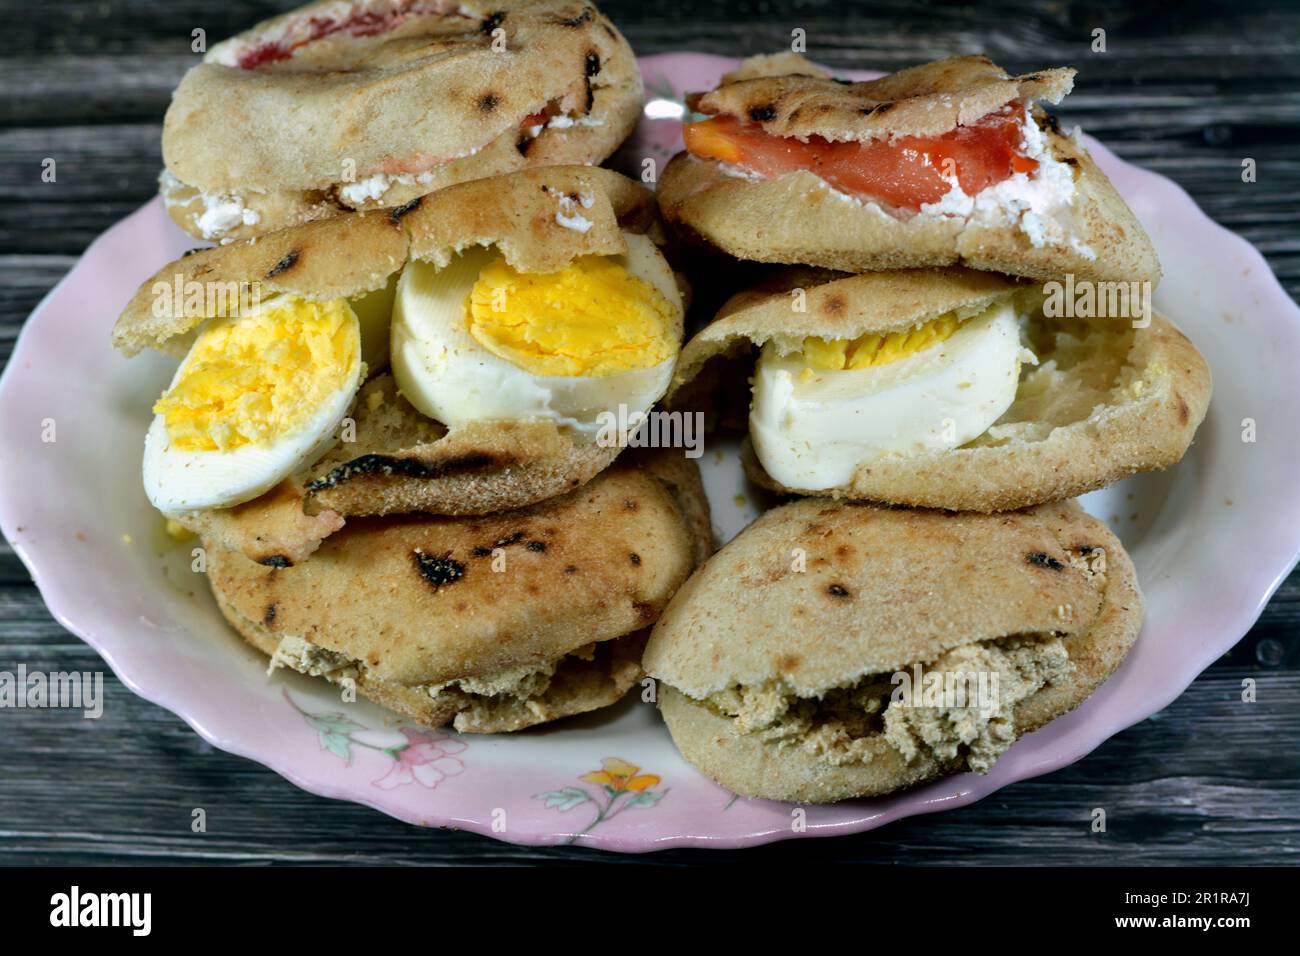 Une assiette de sandwiches au fromage blanc Feta avec des tranches de tomates, de la tahini halva traditionnelle ou Halawa Tahiniya et des tranches d'œufs durs insi Banque D'Images